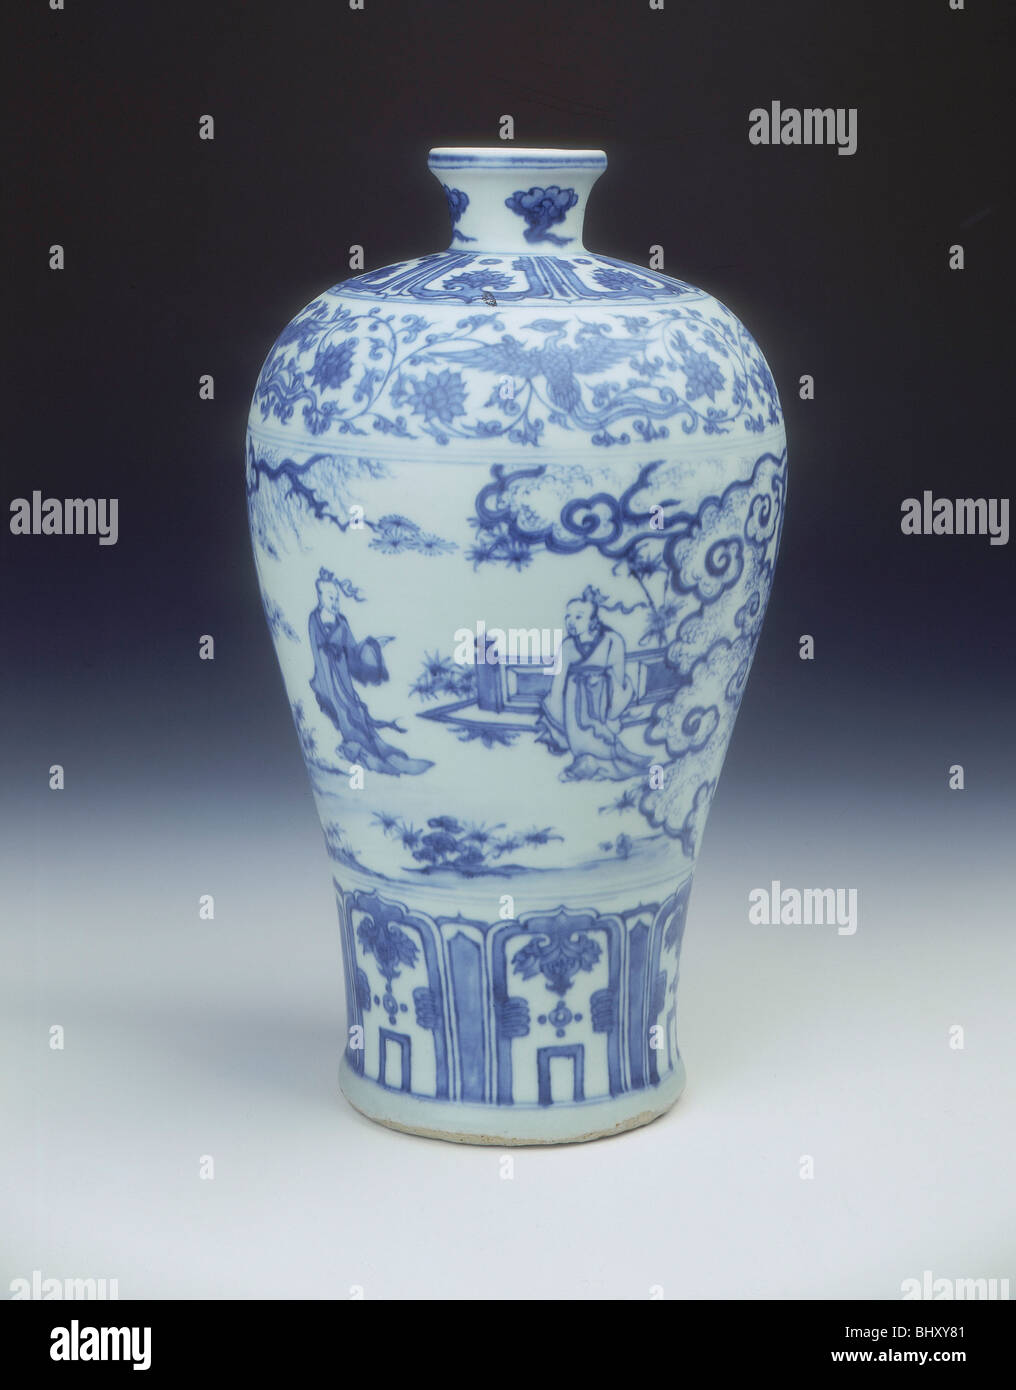 Vase meiping emaillé bleu et blanc, dynastie Ming, Chine, 2e moitié du 15e siècle. Artiste : Inconnu Banque D'Images